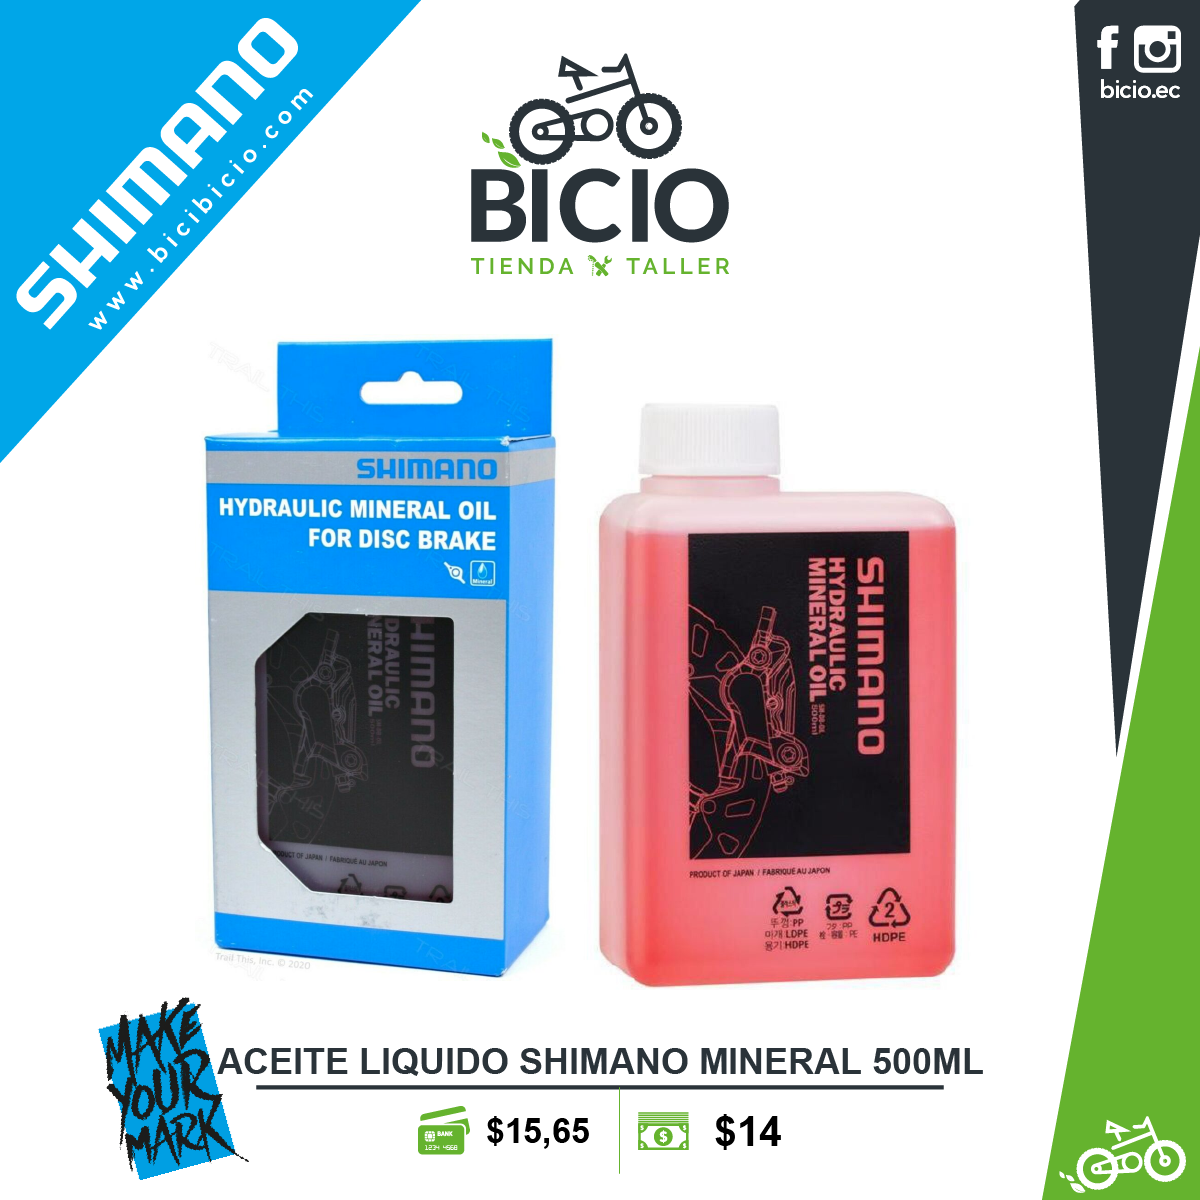 Positivo Mejor a nombre de ACEITE SHIMANO MINERAL 500ML - Bicio tienda - taller de bicicletas